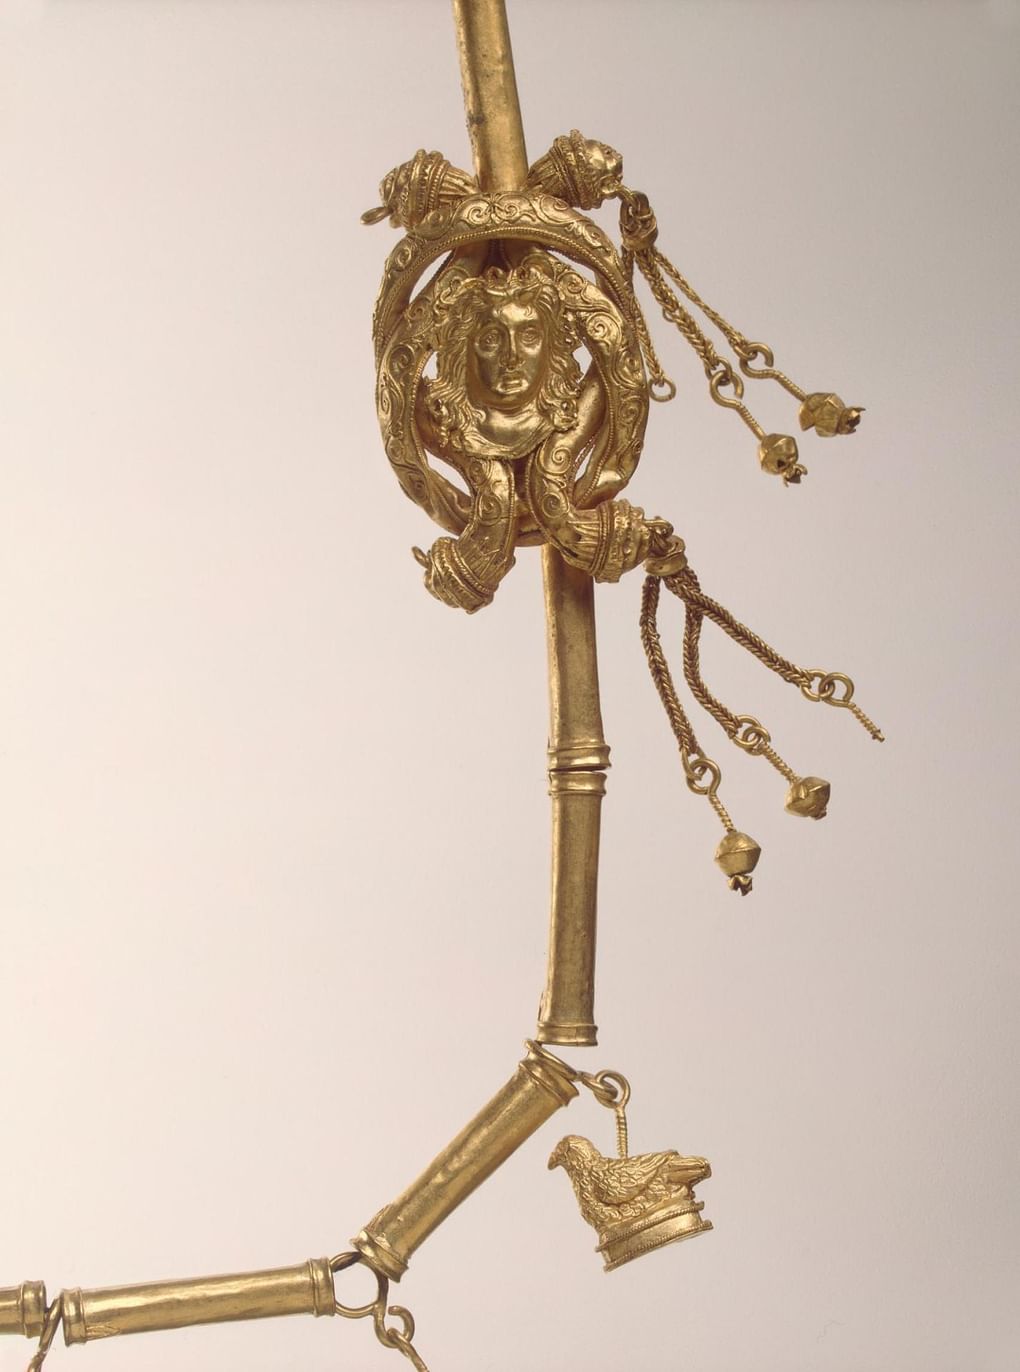 Ожерелье с двумя геракловыми узлами. Вторая четверть III в.до н. э. Боспорское царство, Пантикапей. Фотография: Государственный Эрмитаж